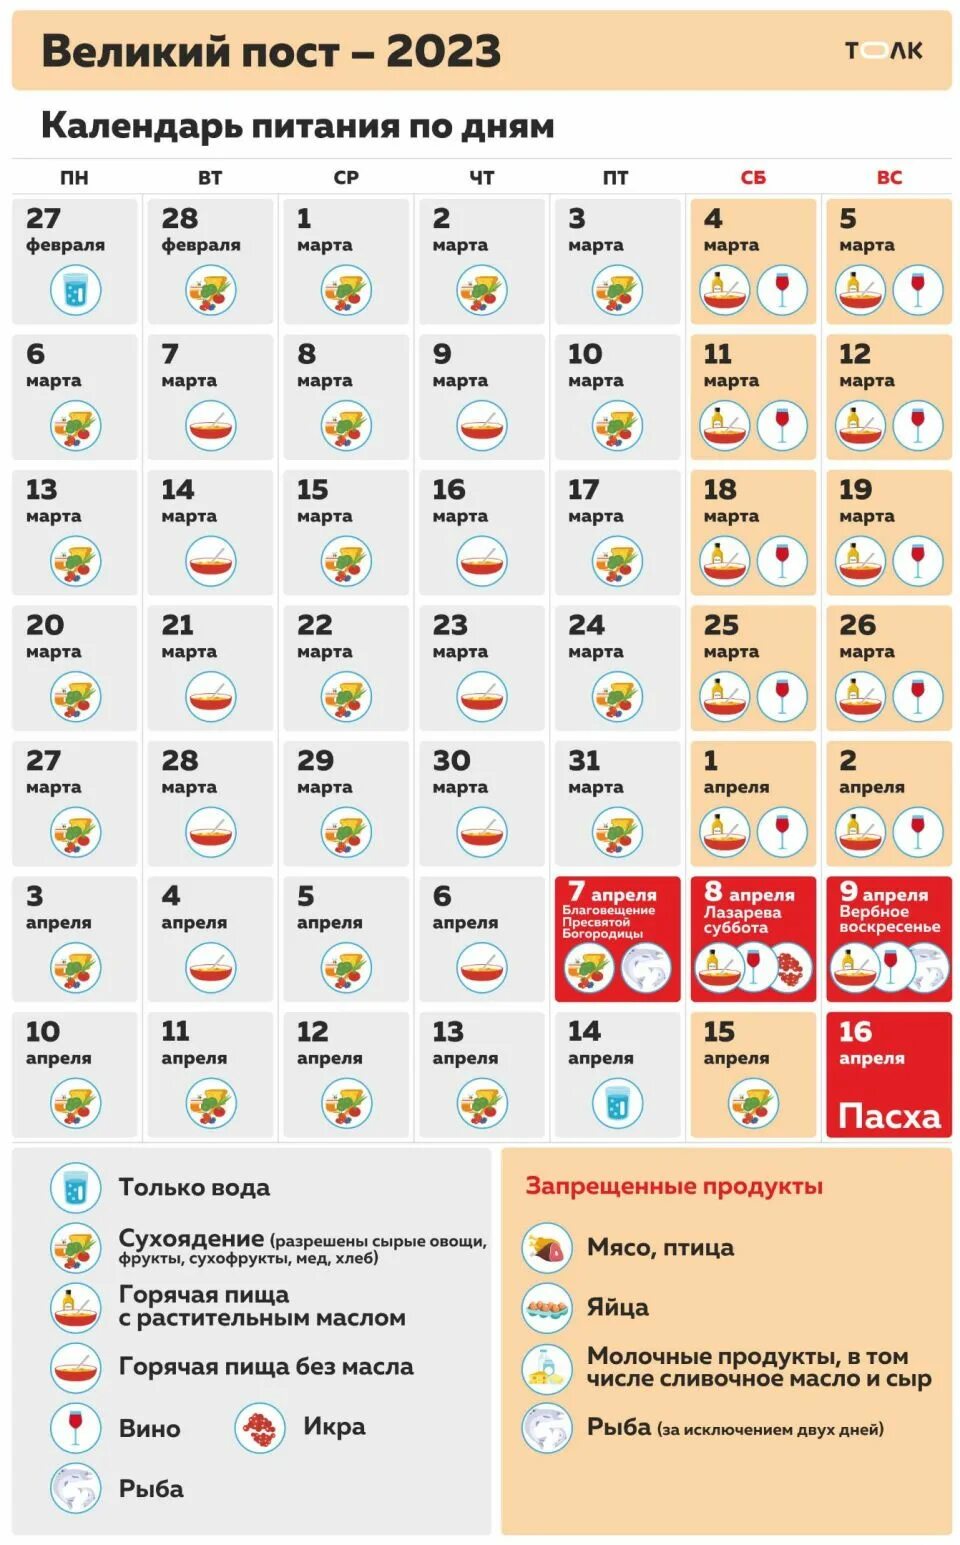 Постные дни в марте 2024 года. Календарь питания. Календарь питания по дням. Великий пост календарь питания. Календарь по питанию в пост.